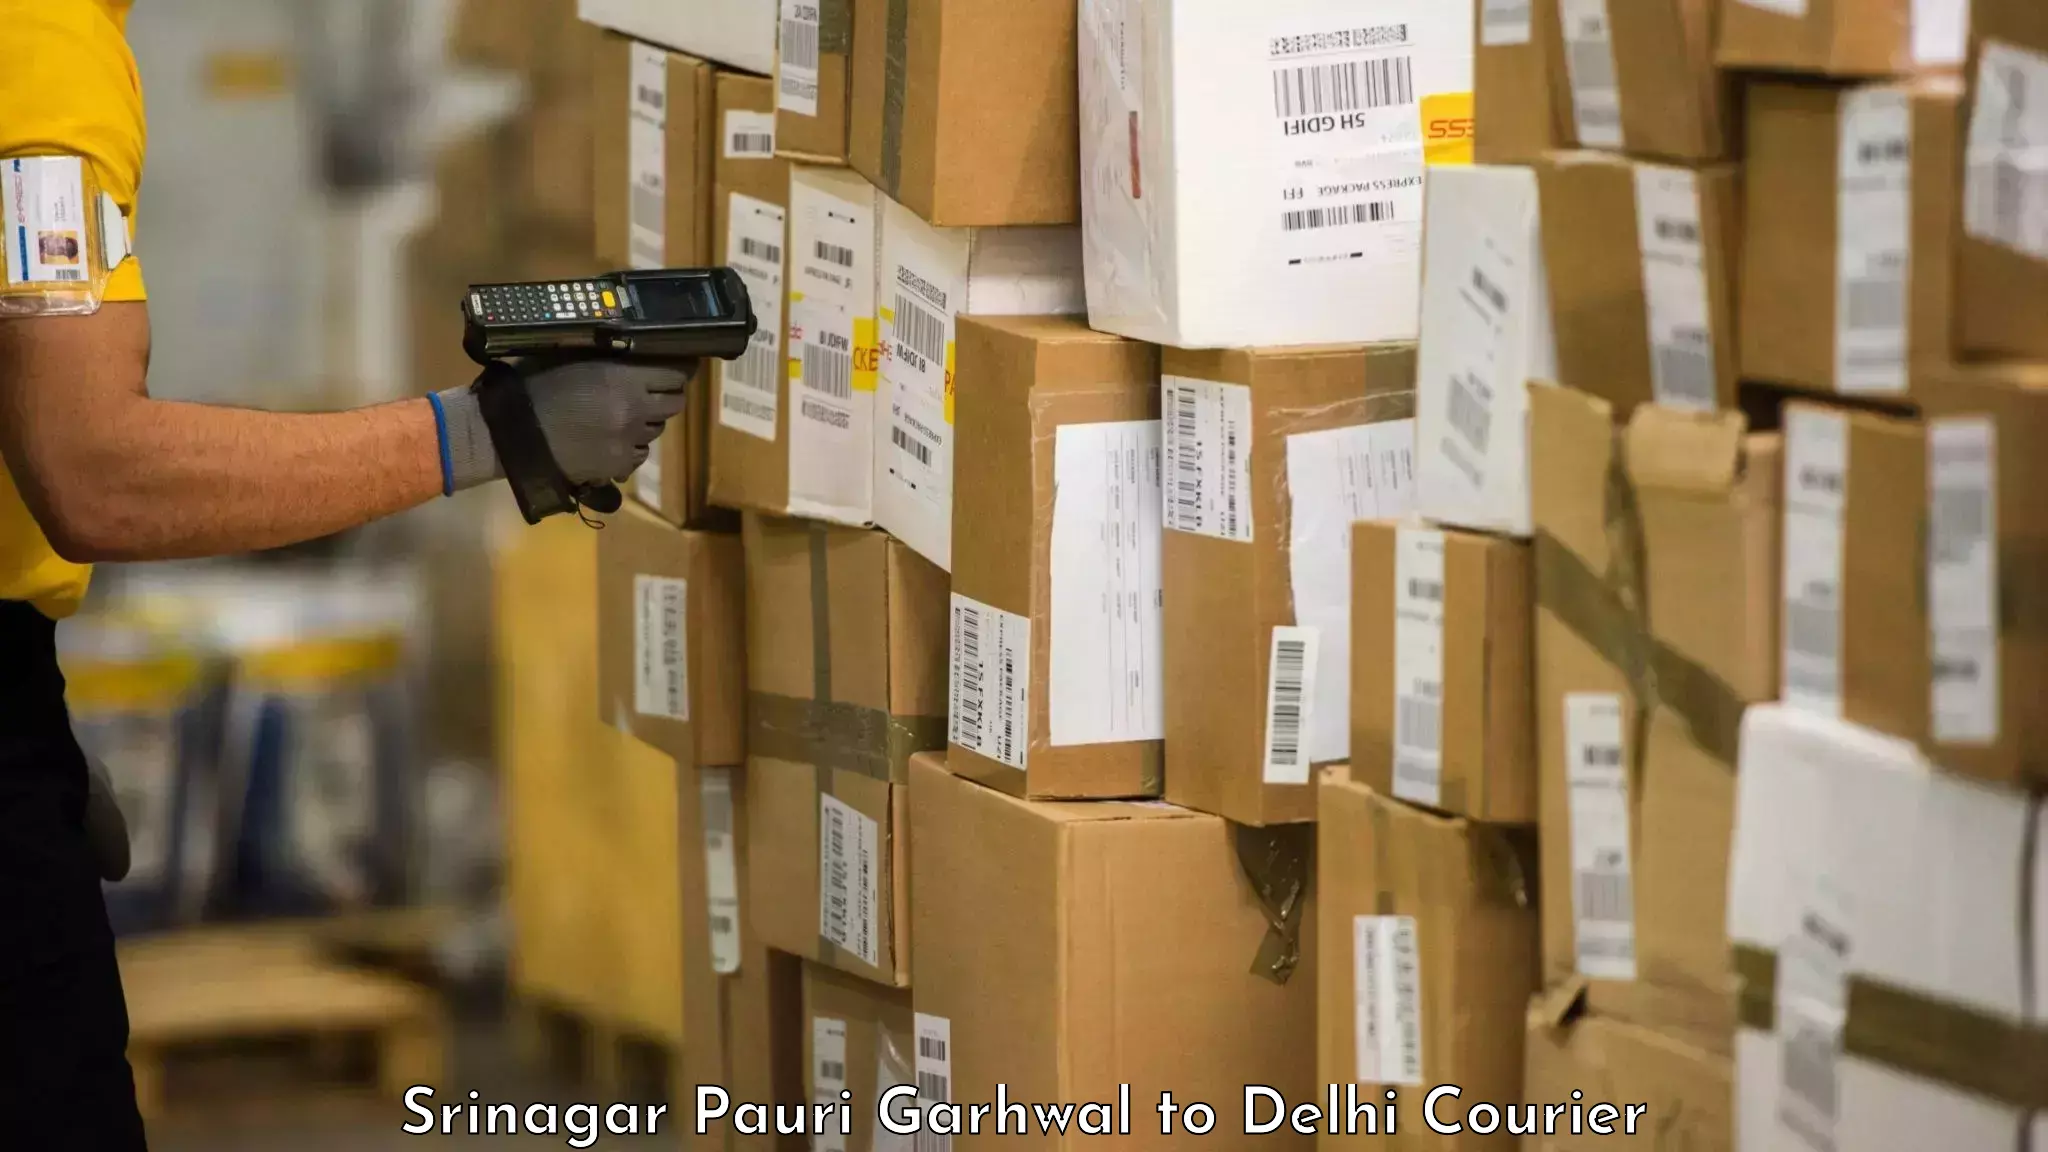 Luggage shipping service Srinagar Pauri Garhwal to East Delhi